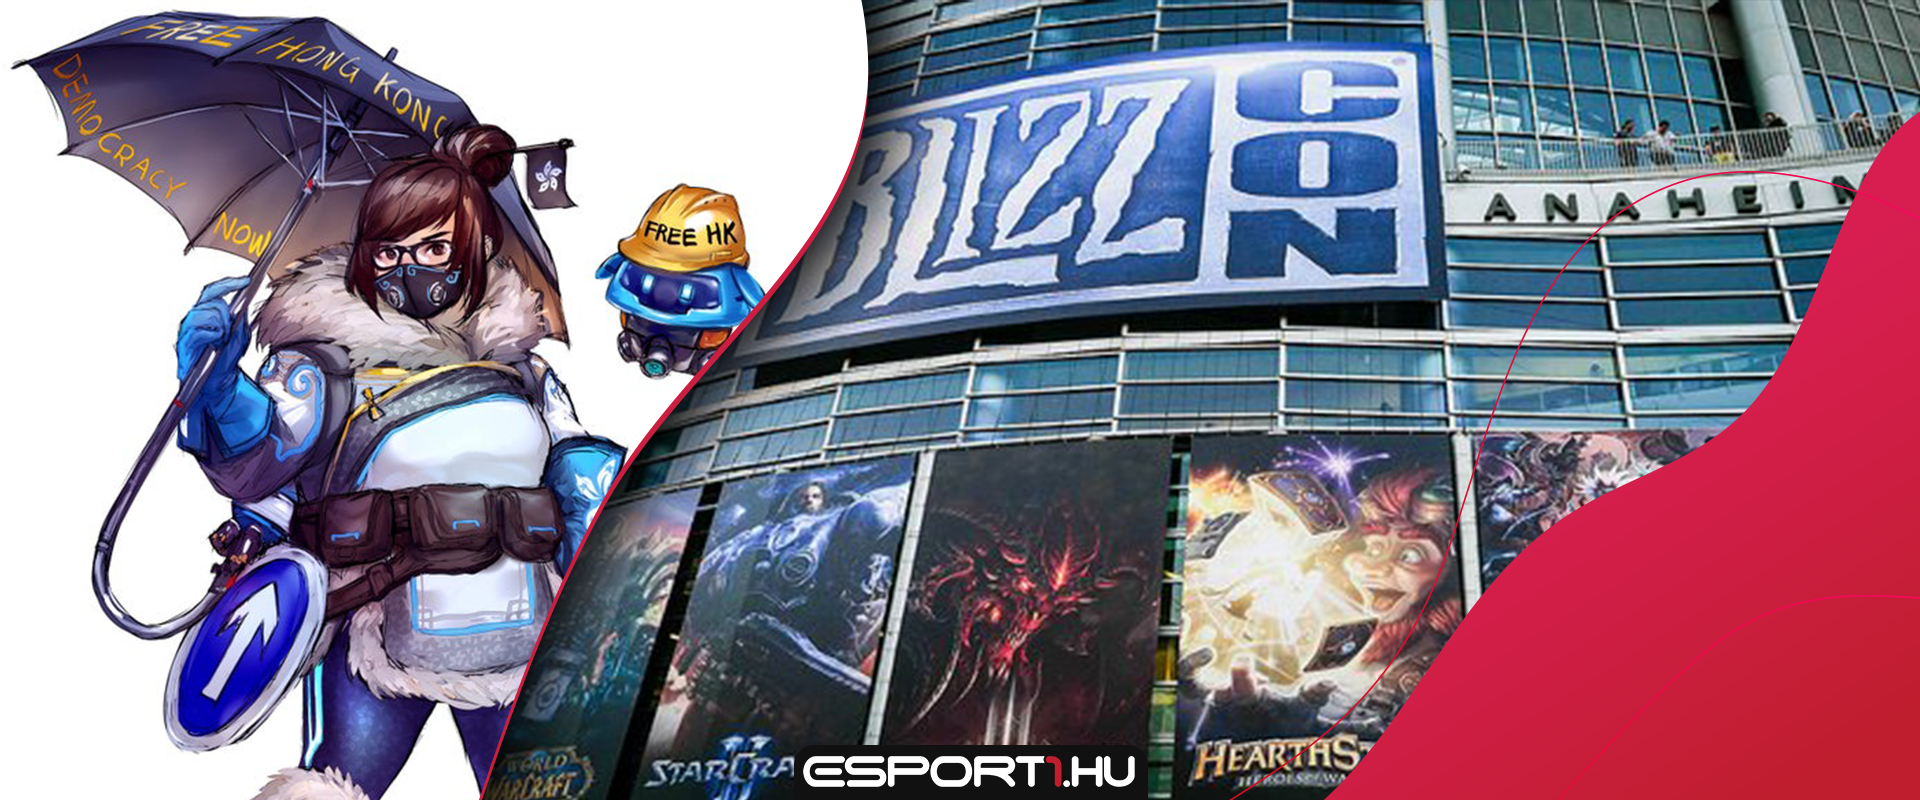 Gamerek egy csoportja Blizzard ellenes tüntetést szervez az idei BlizzConra